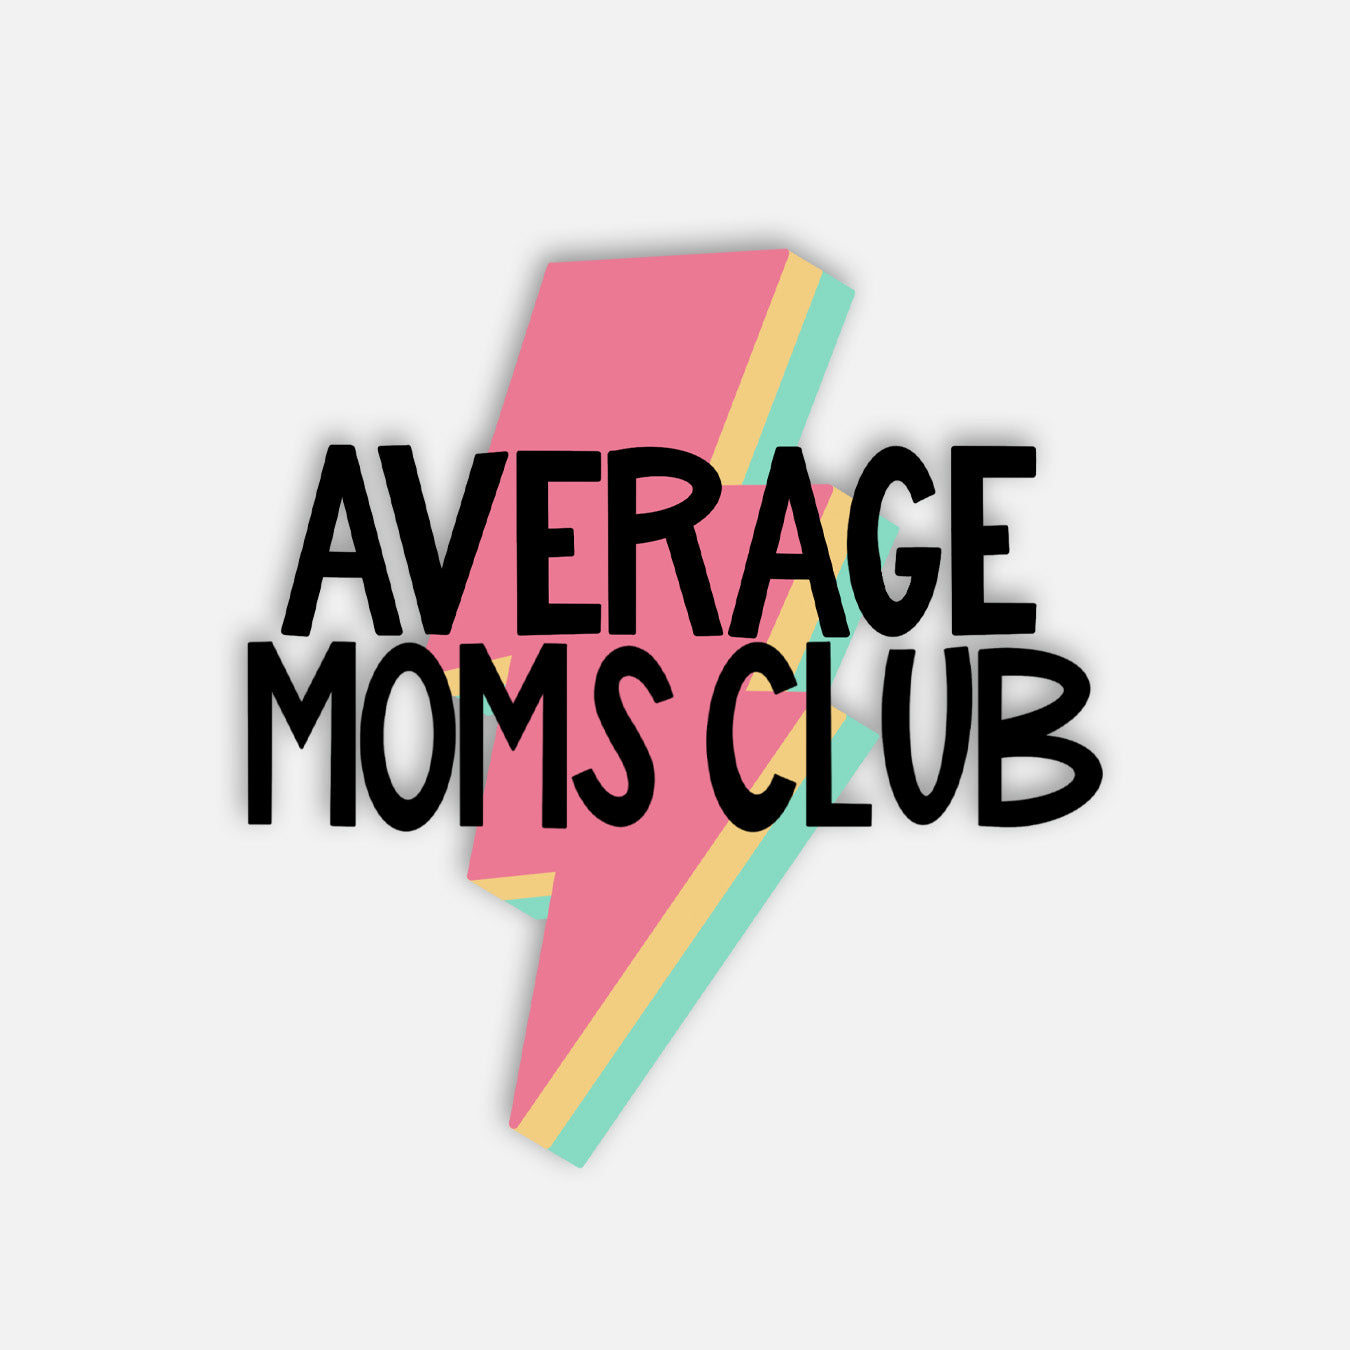 Average Moms Club Vinyl Sticker, Funny Mom Sticker